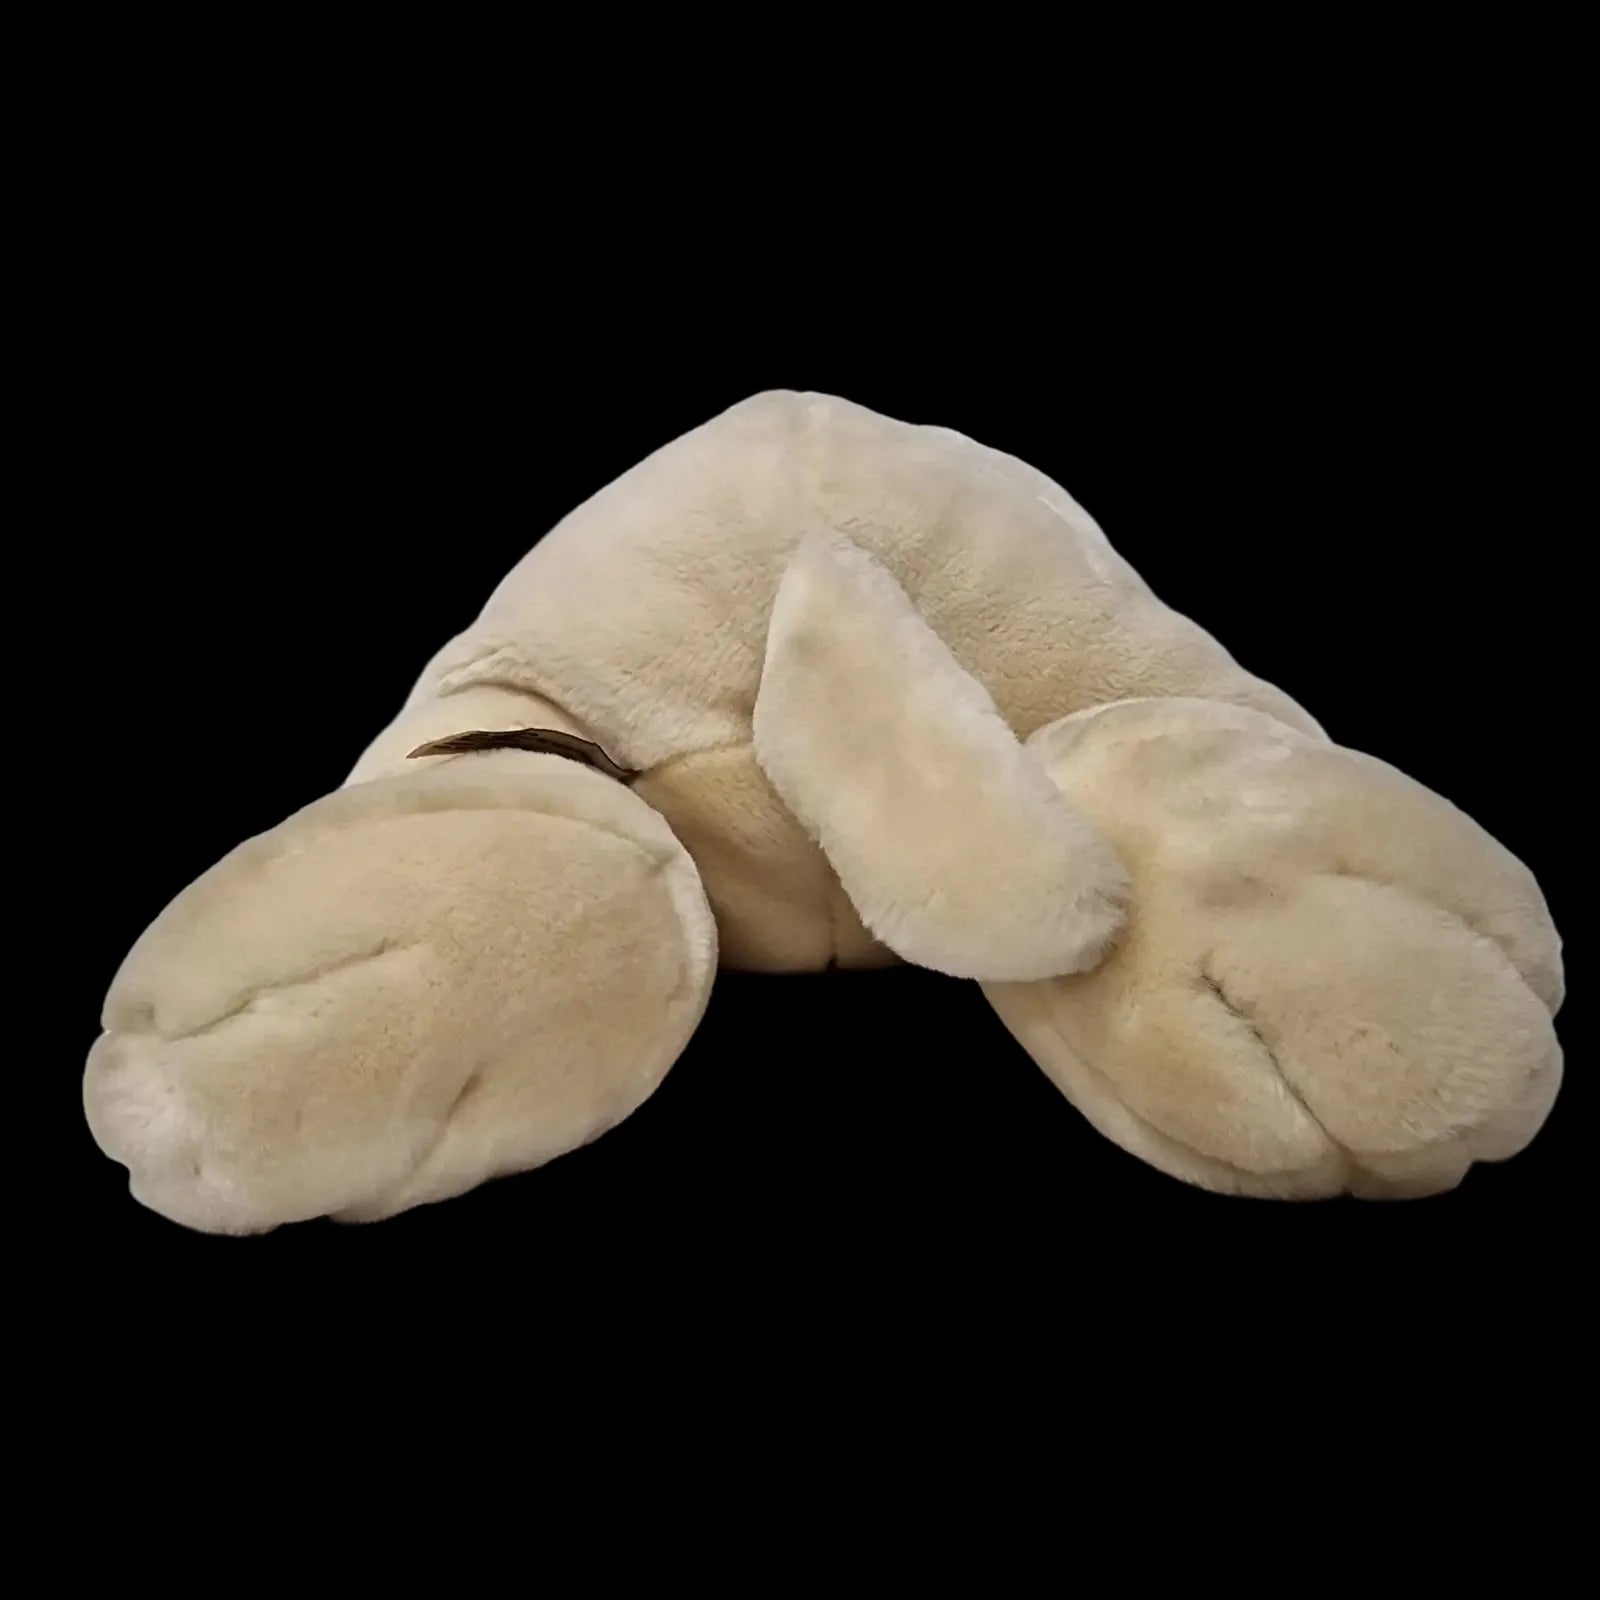 Keel Toys Labrador Puppy Dog Plush Soft Toy Cuddly Stuffed